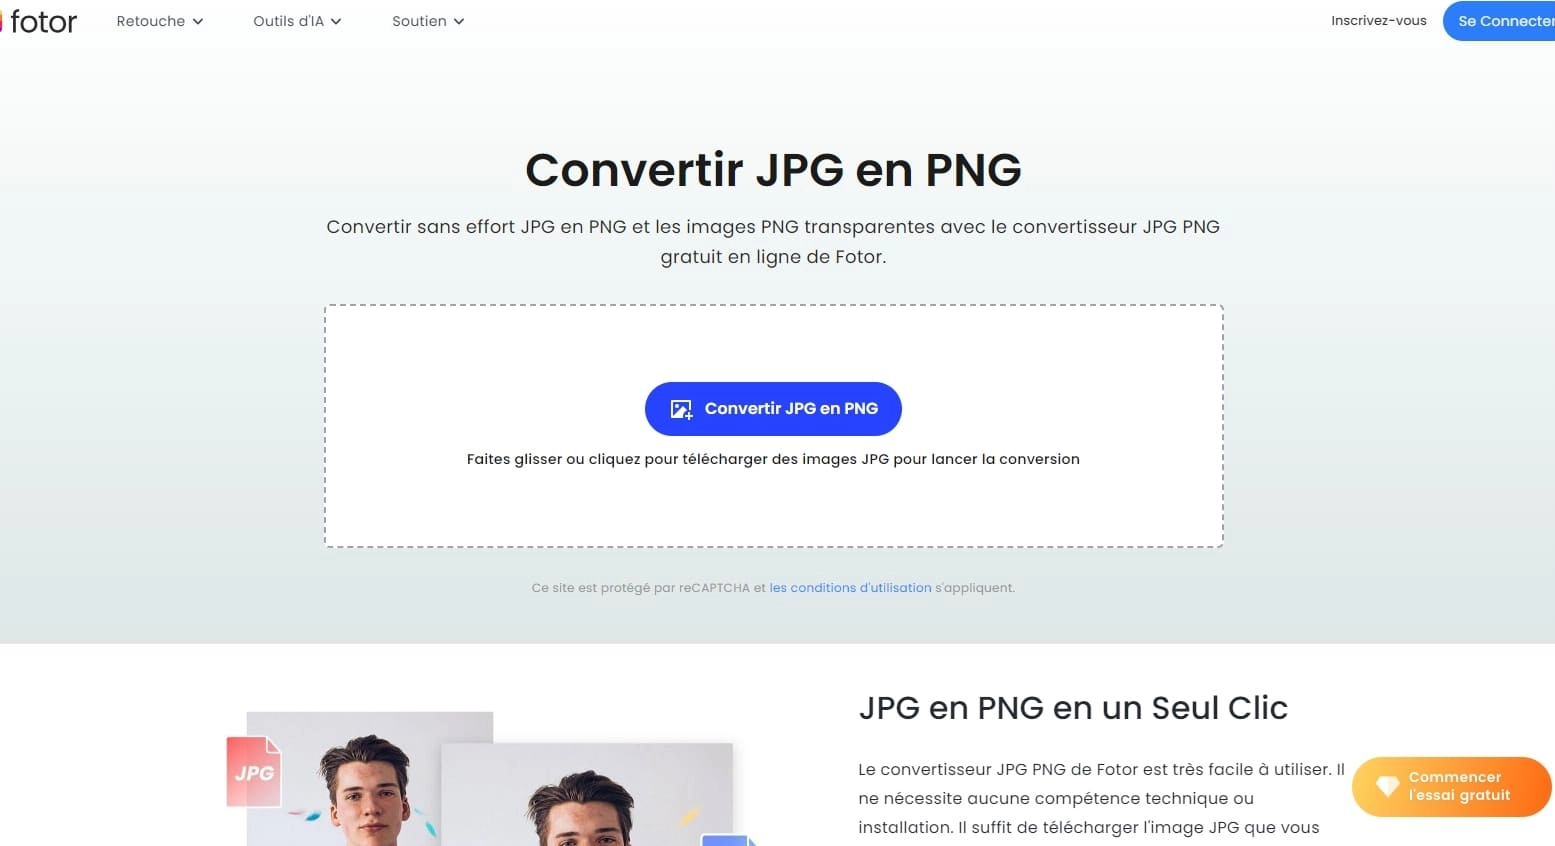 Convertir JPG en PNG fotor